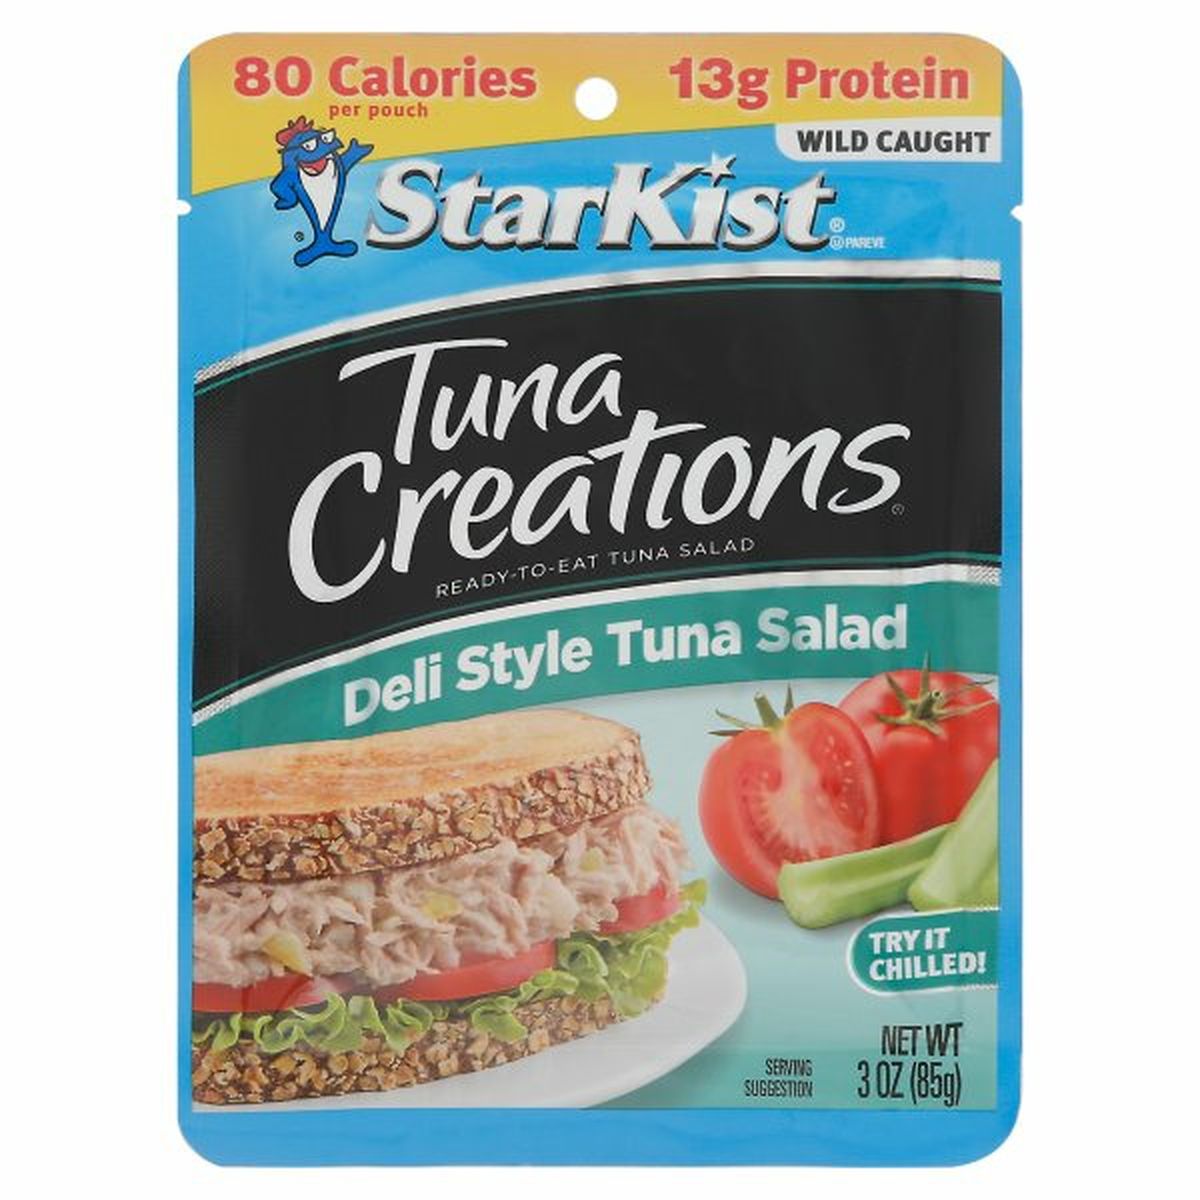 Calories in StarKist Tuna Creations Tuna Salad, Deli Style